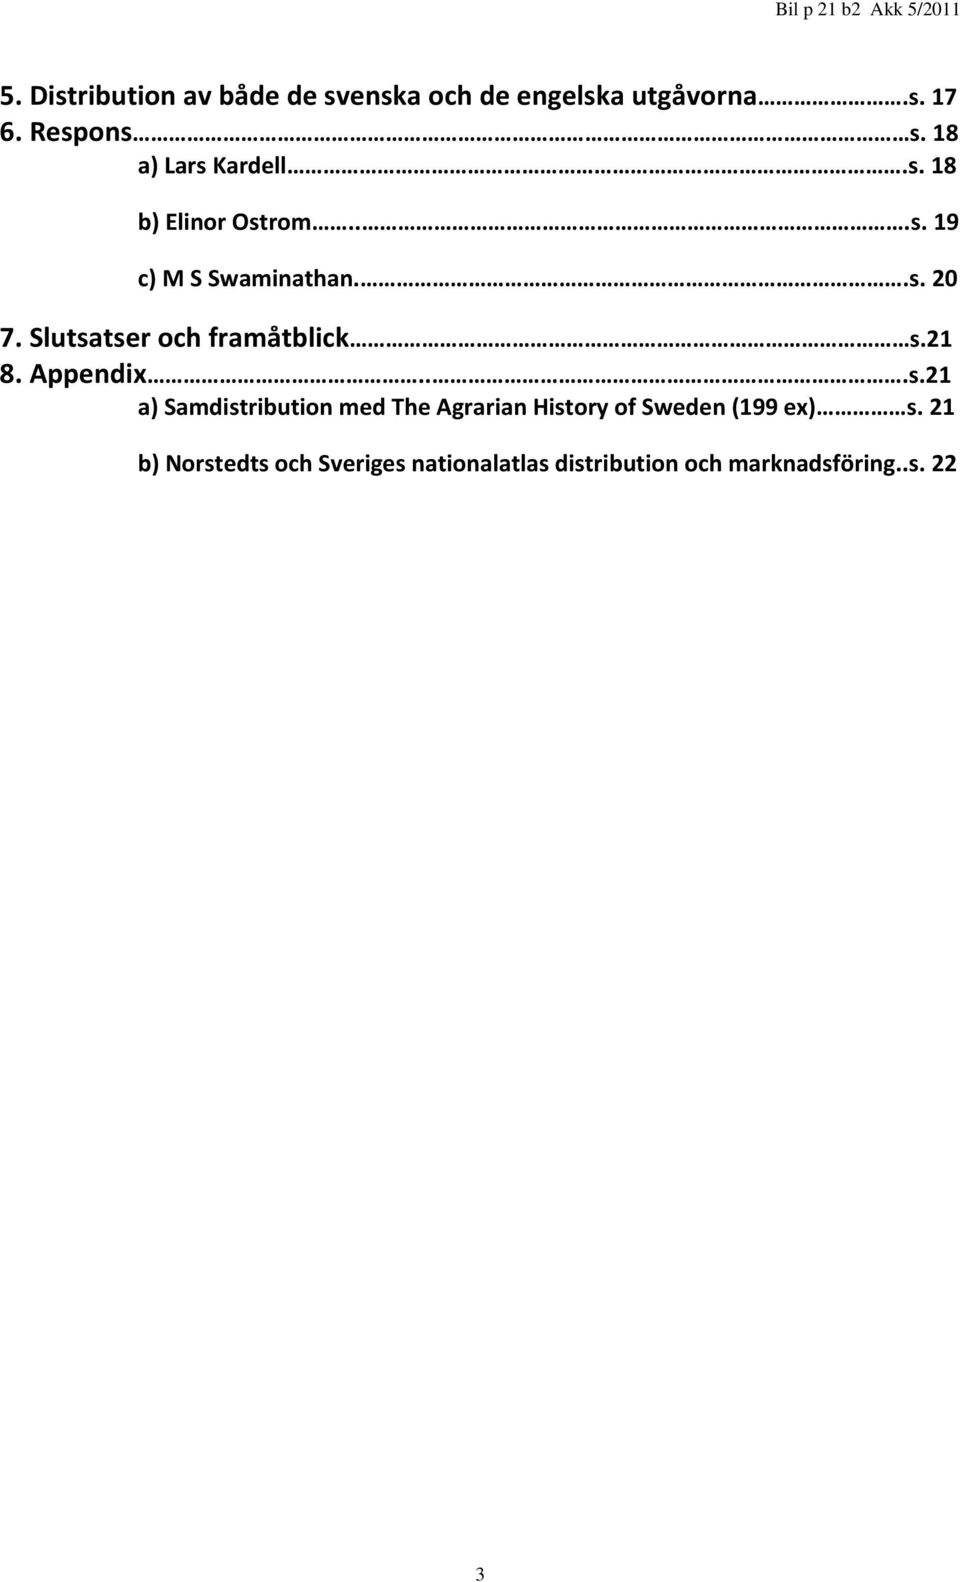 Slutsatser och framåtblick s.21 8. Appendix...s.21 a) Samdistribution med The Agrarian History of Sweden (199 ex) s.